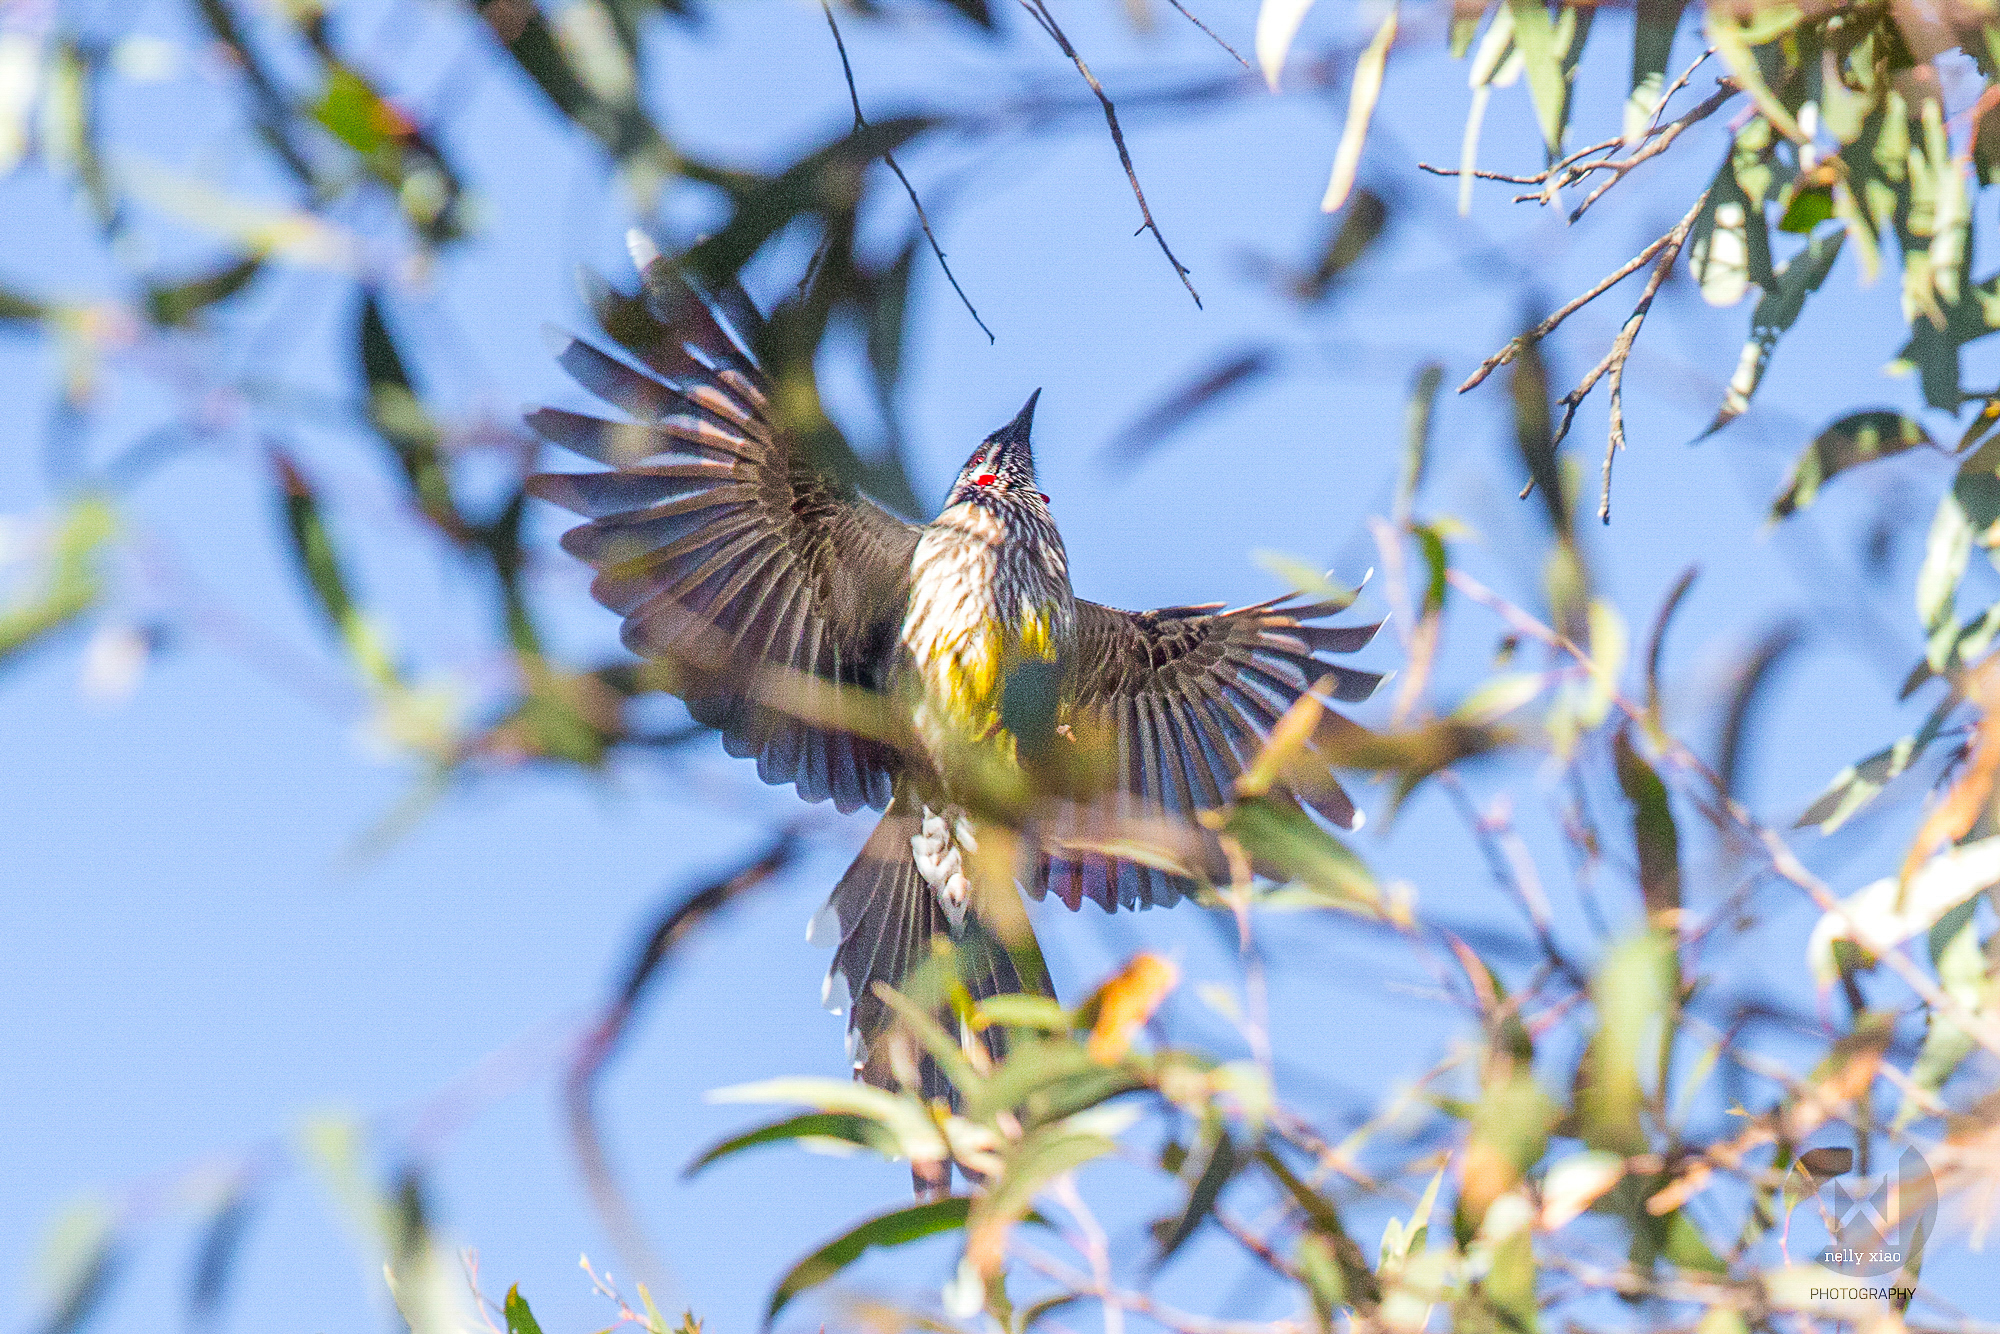   Red wattlebird   Katoomba NSW, 2016 